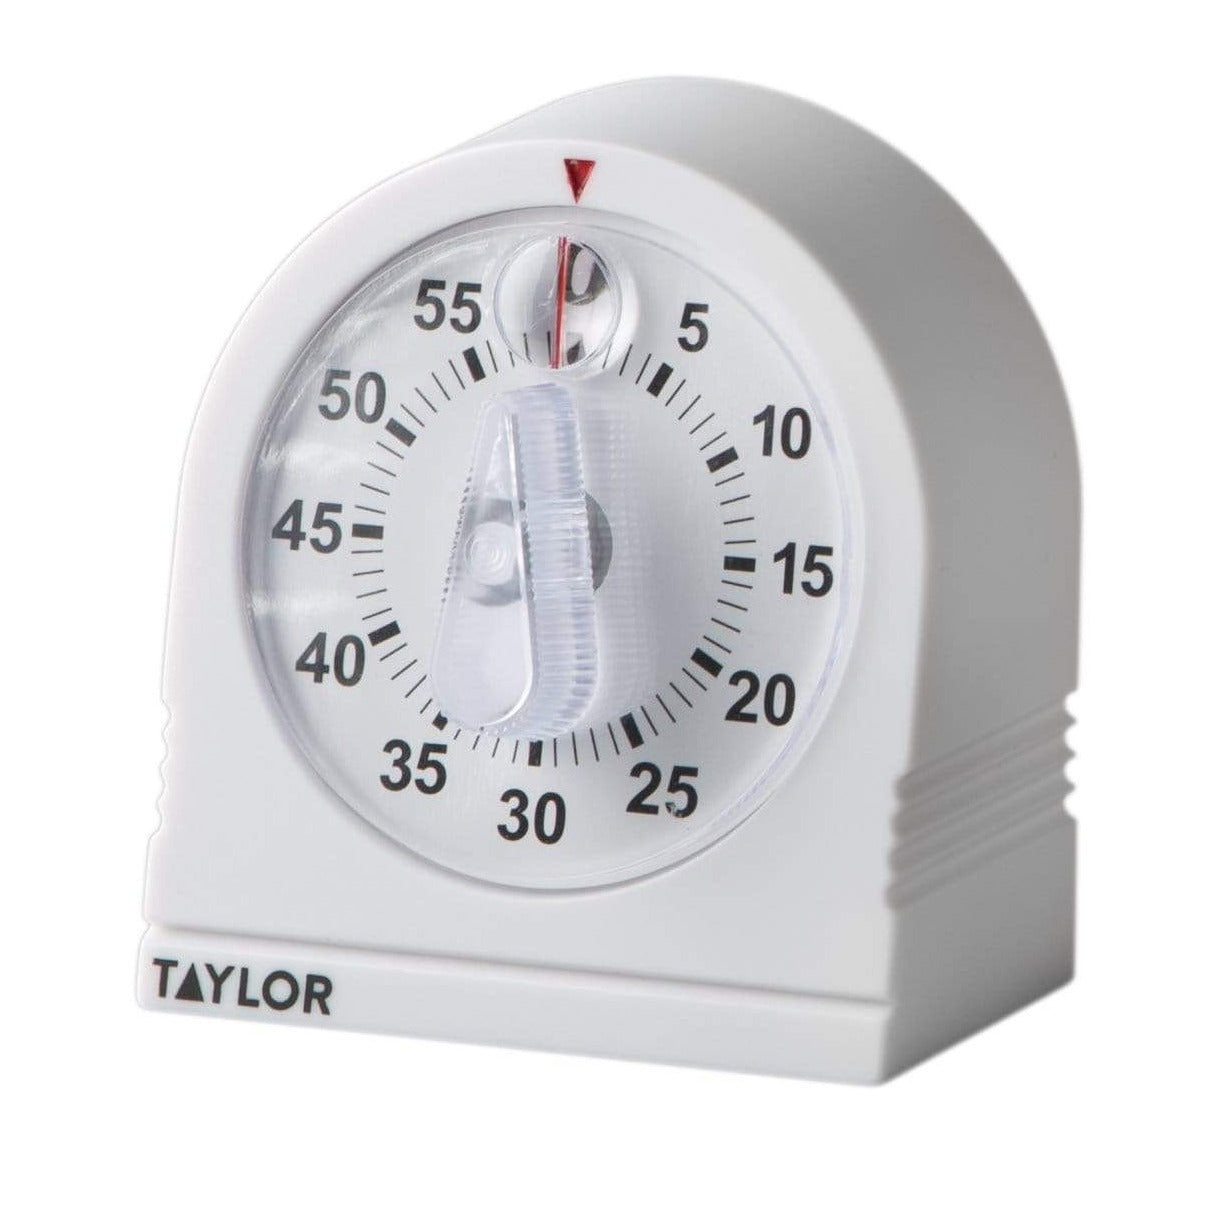 Taylor 5873 Super-Loud Digital Timer - 1 Day - For Kitchen